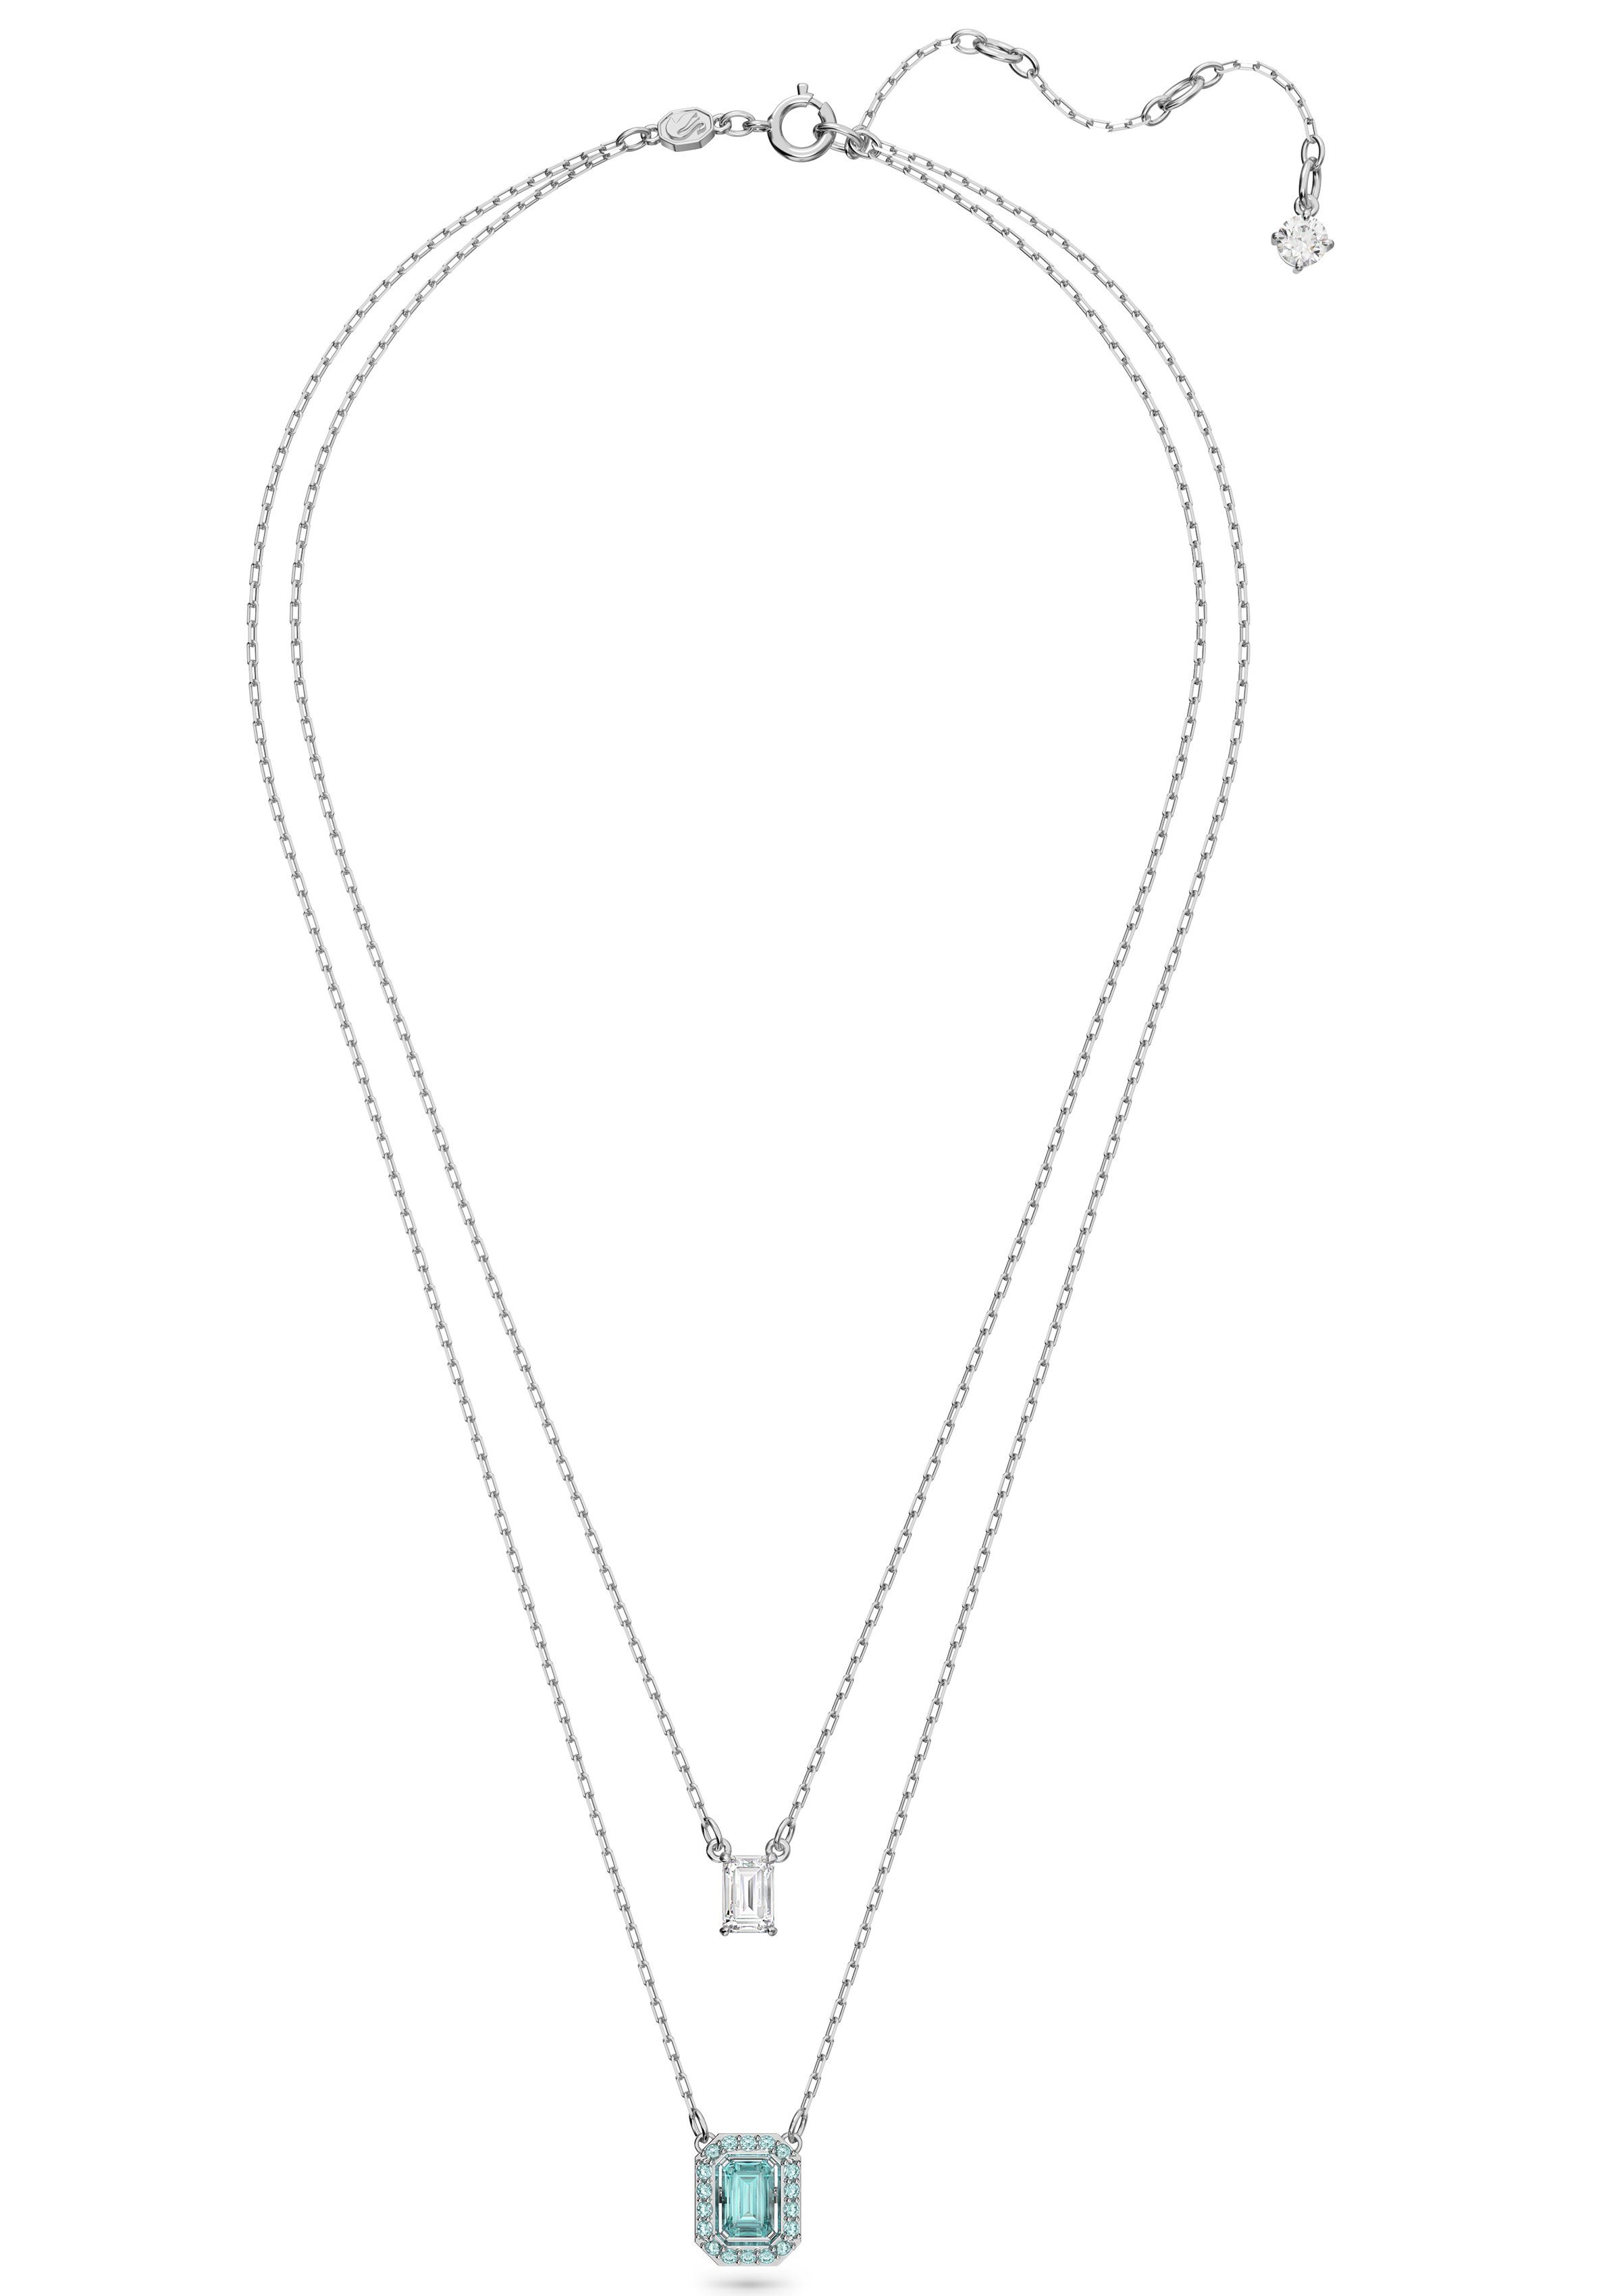 Swarovski Kette mit Anhänger Millenia im mit Swarovski® Lagenlook, Halskette Kristall 5640557, silber